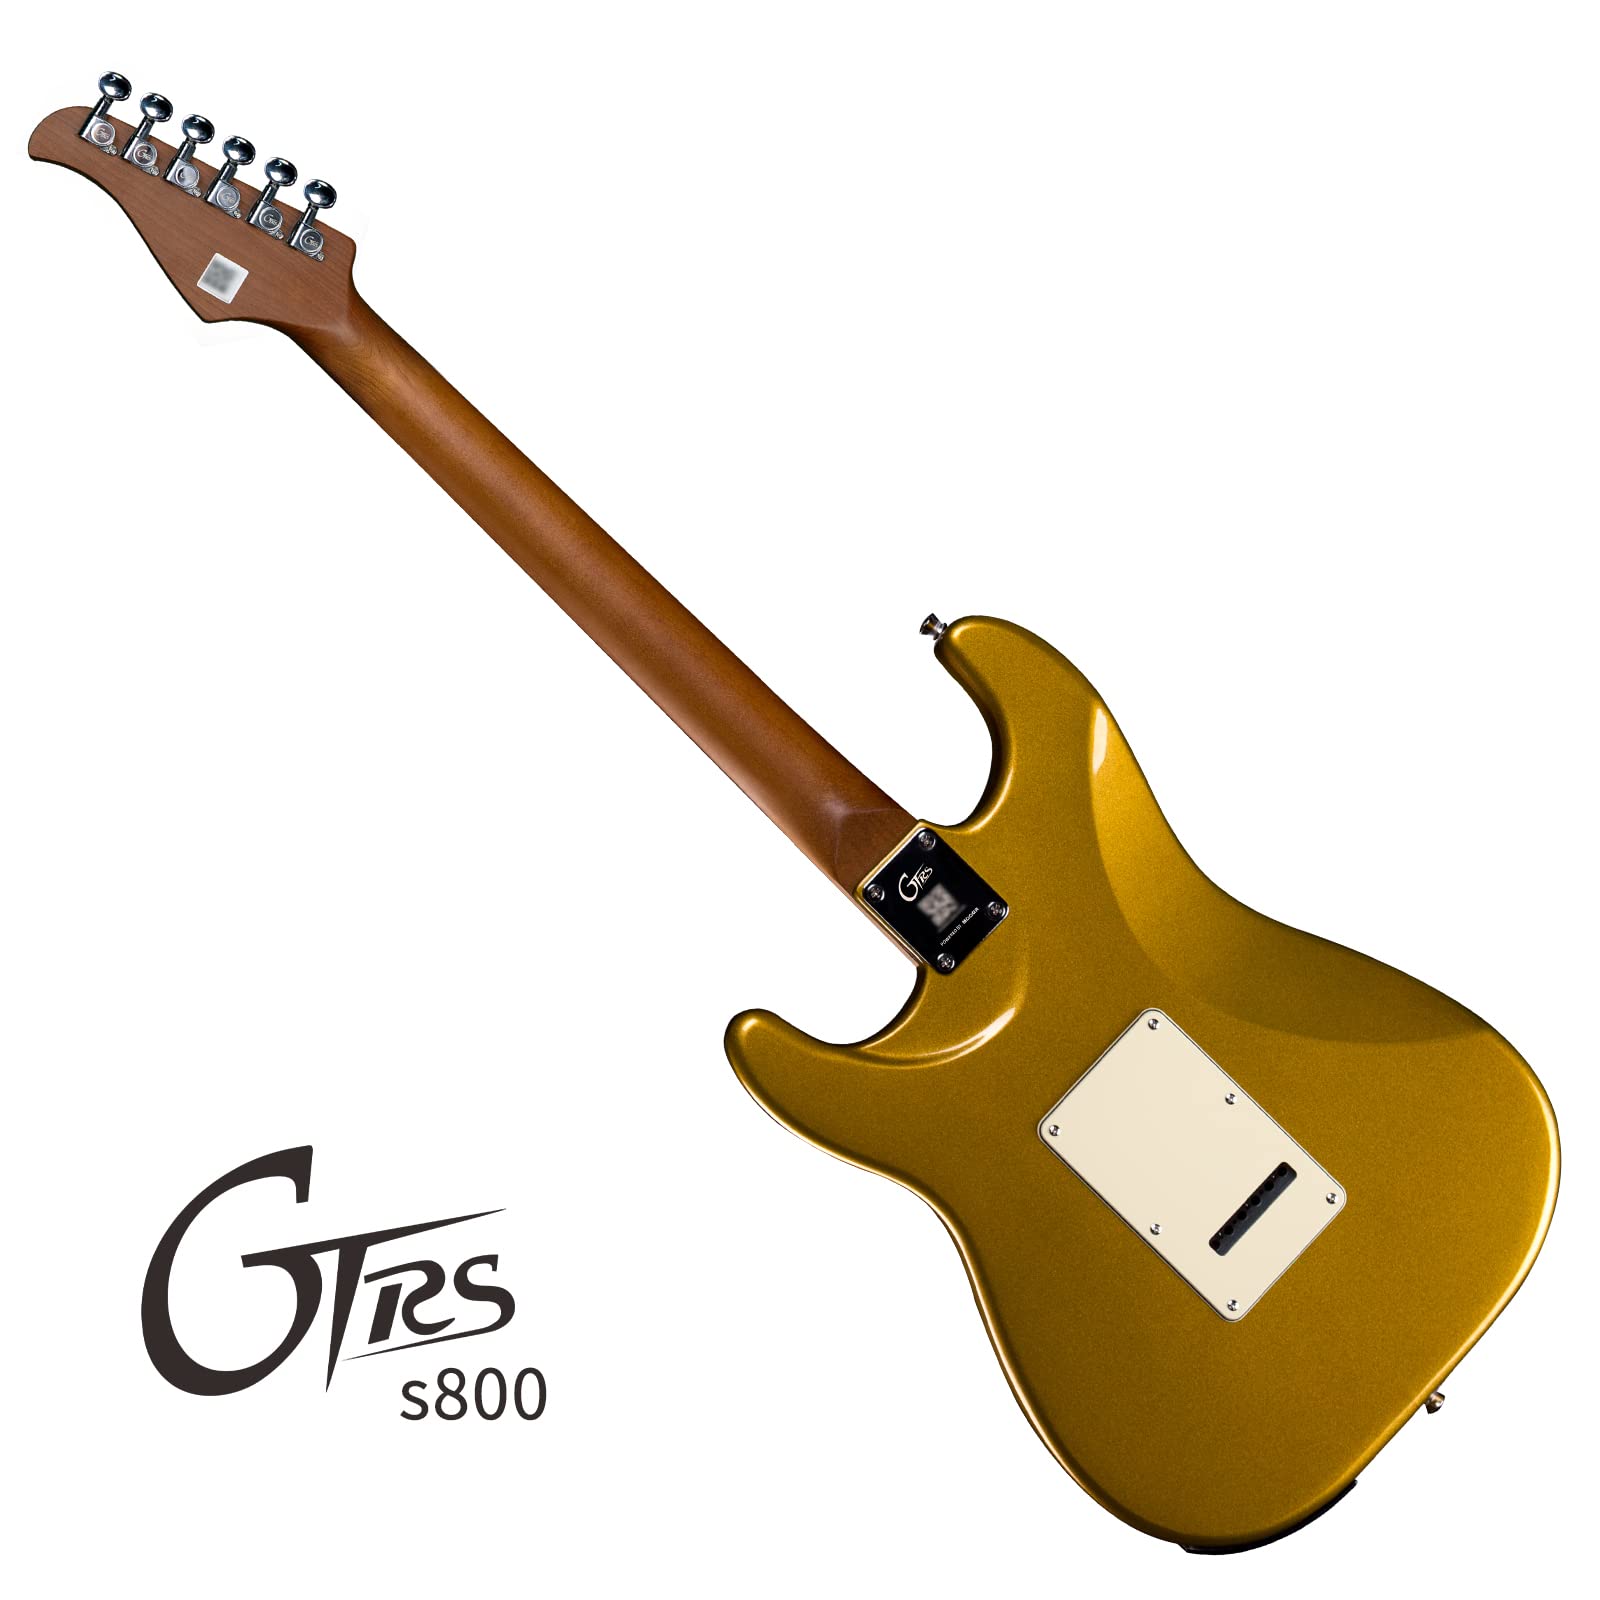 Đàn Guitar Điện Mooer GTRS S800 Gold - Việt Music